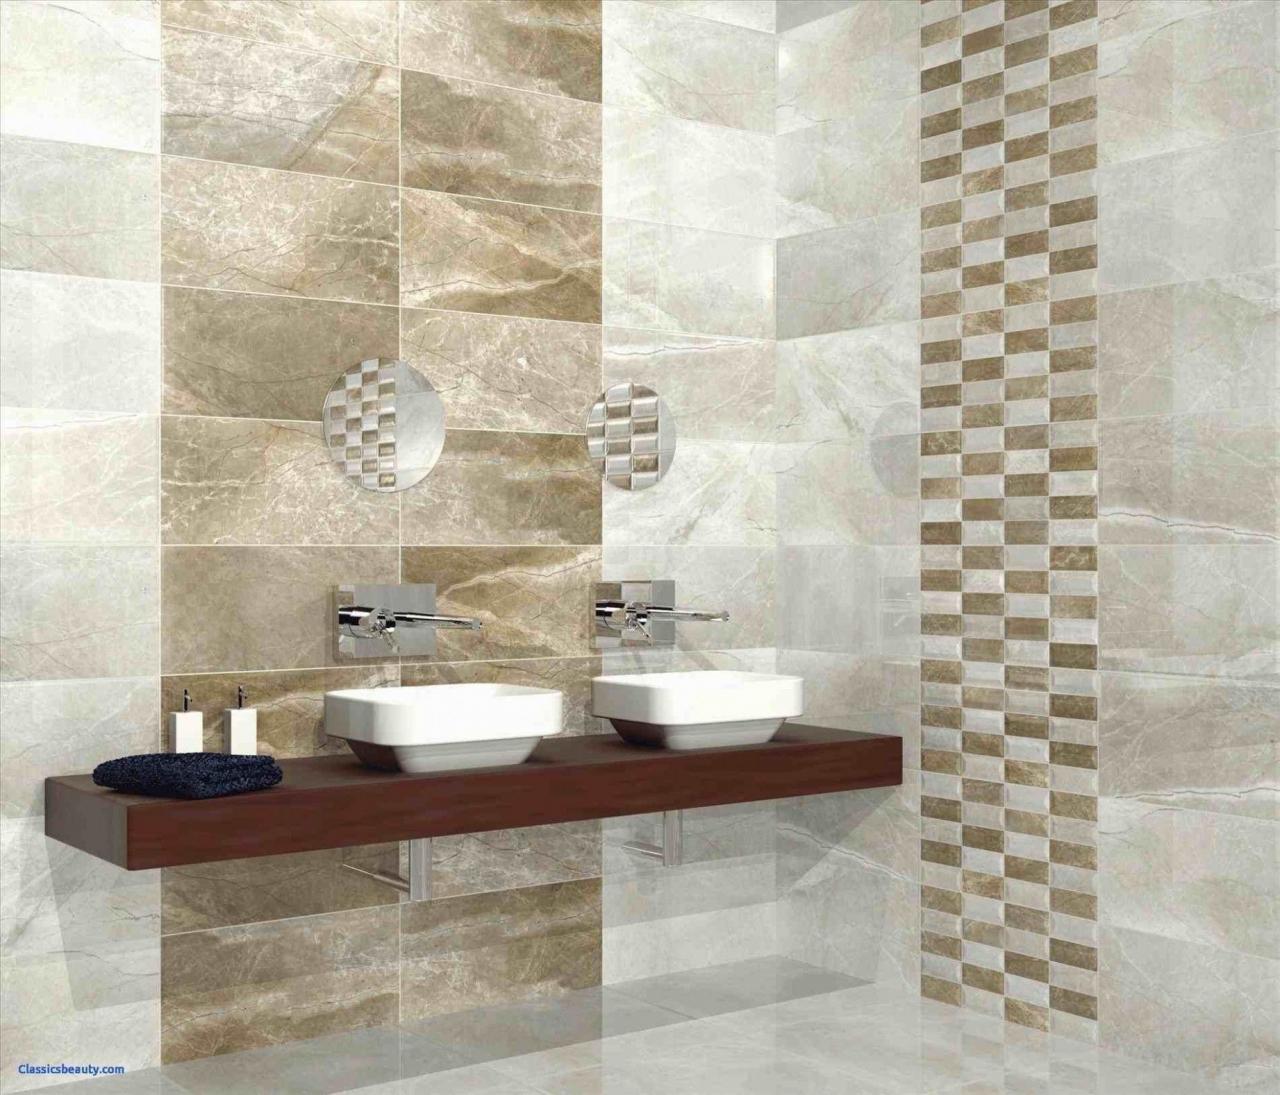 20+ Bathroom Floor Tiles Images